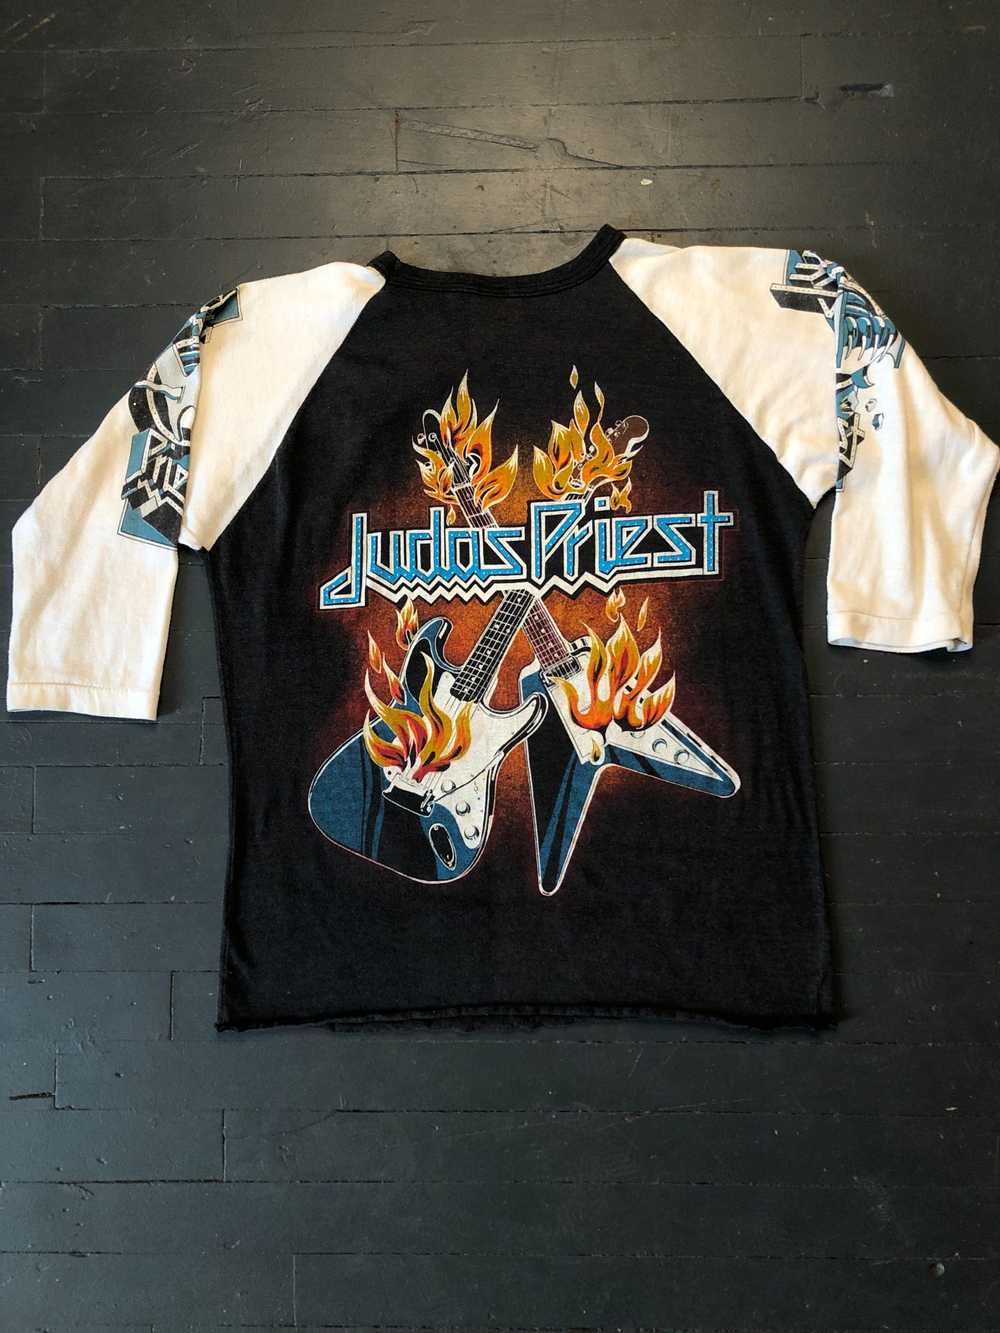 Vintage Rare Judas Priest Shirt 1980s - image 4